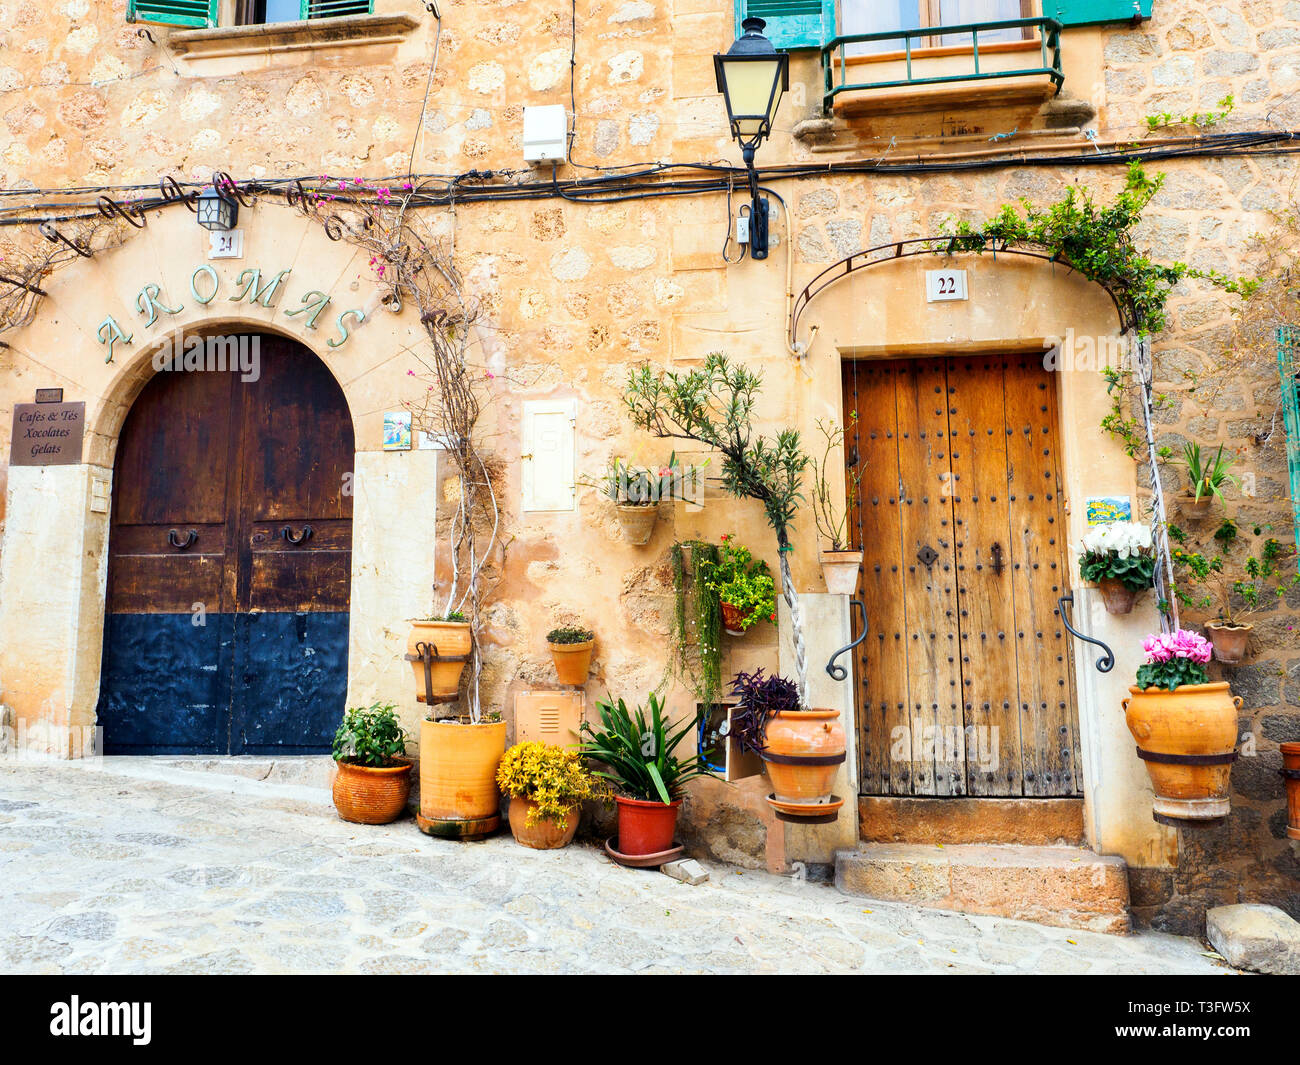 Village of Valldemossa - Balearic Islands, Spain Stock Photo